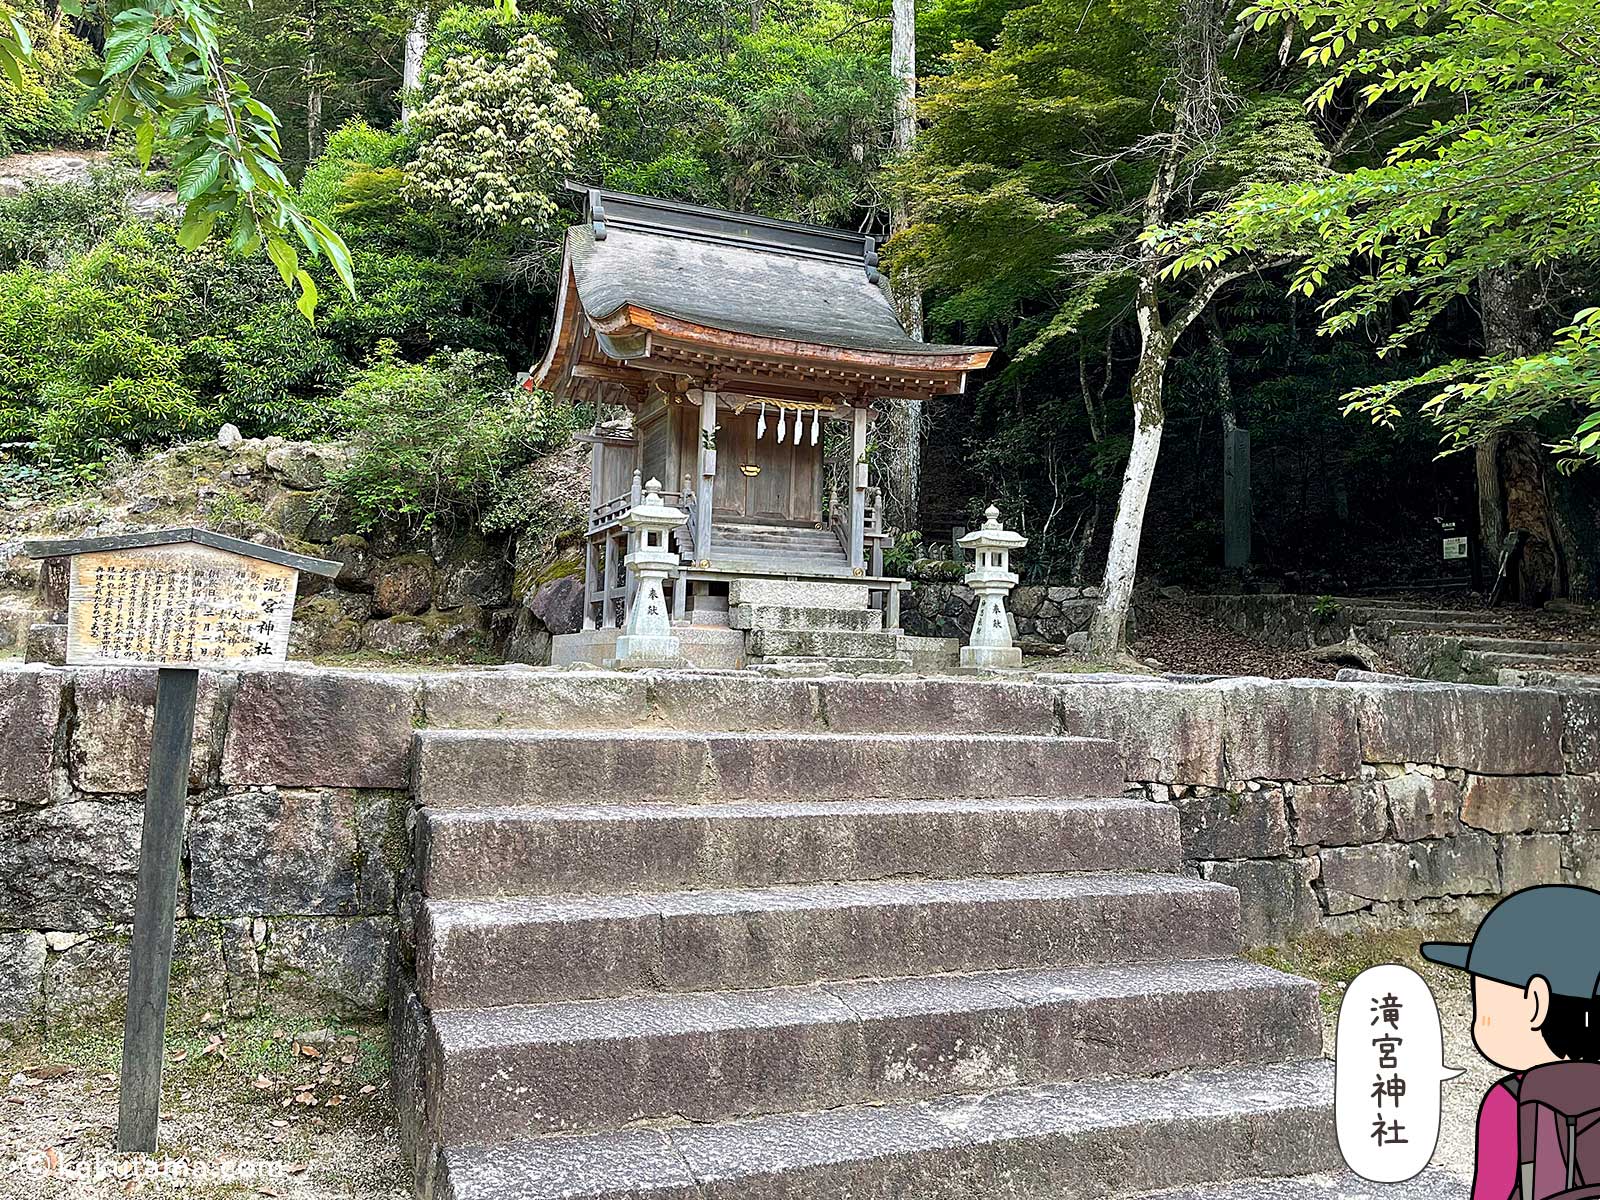 滝宮神社の写真と登山者のイラスト